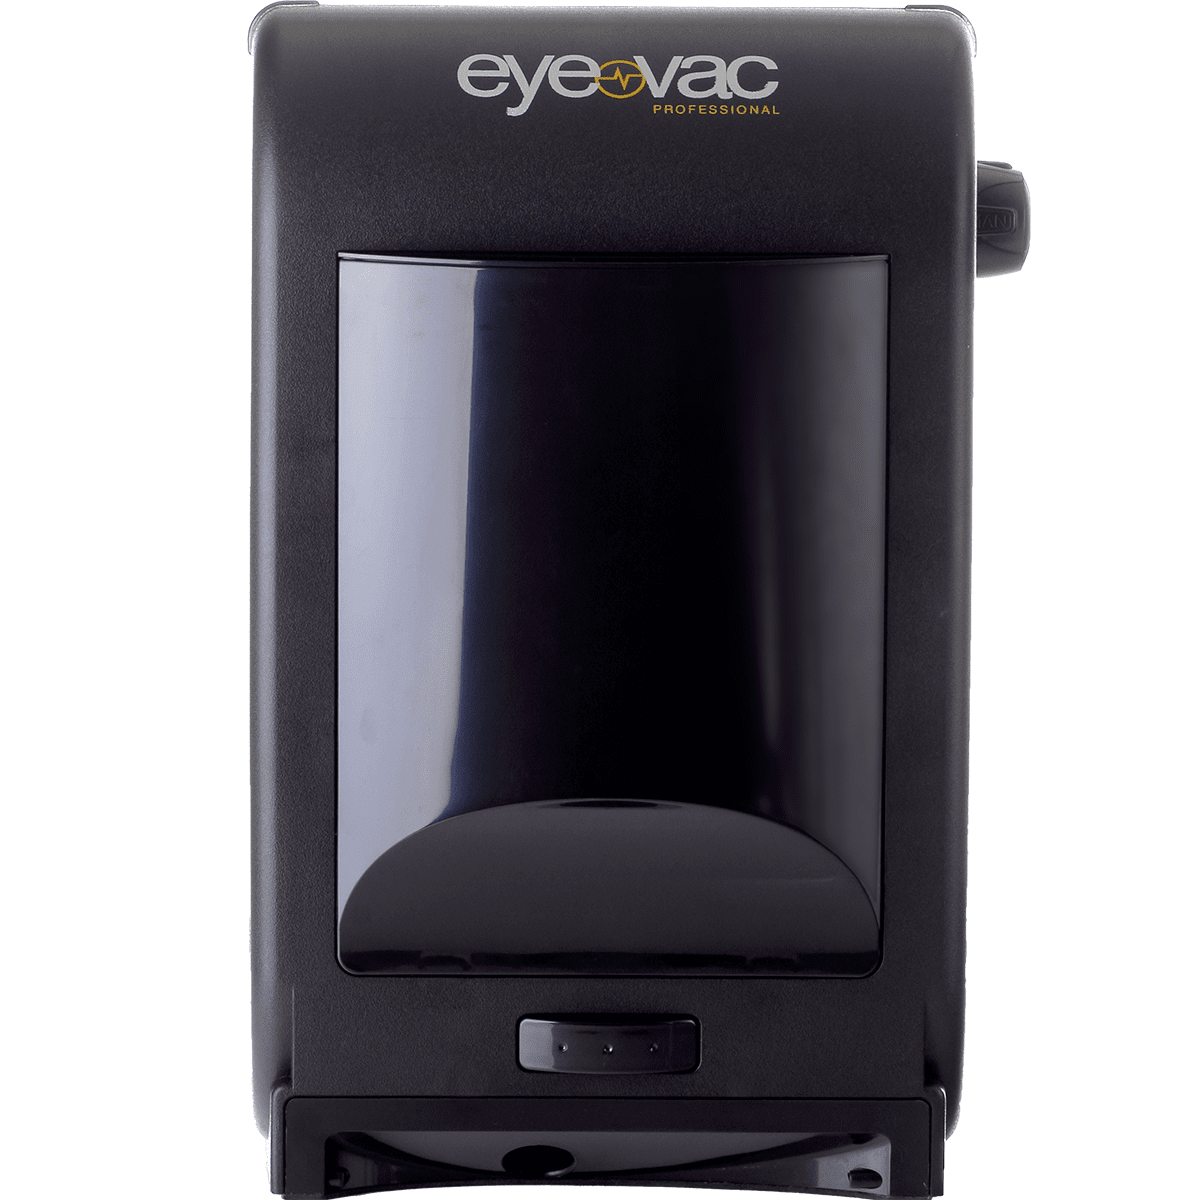 Eyevac Pro Touchless Vacuum